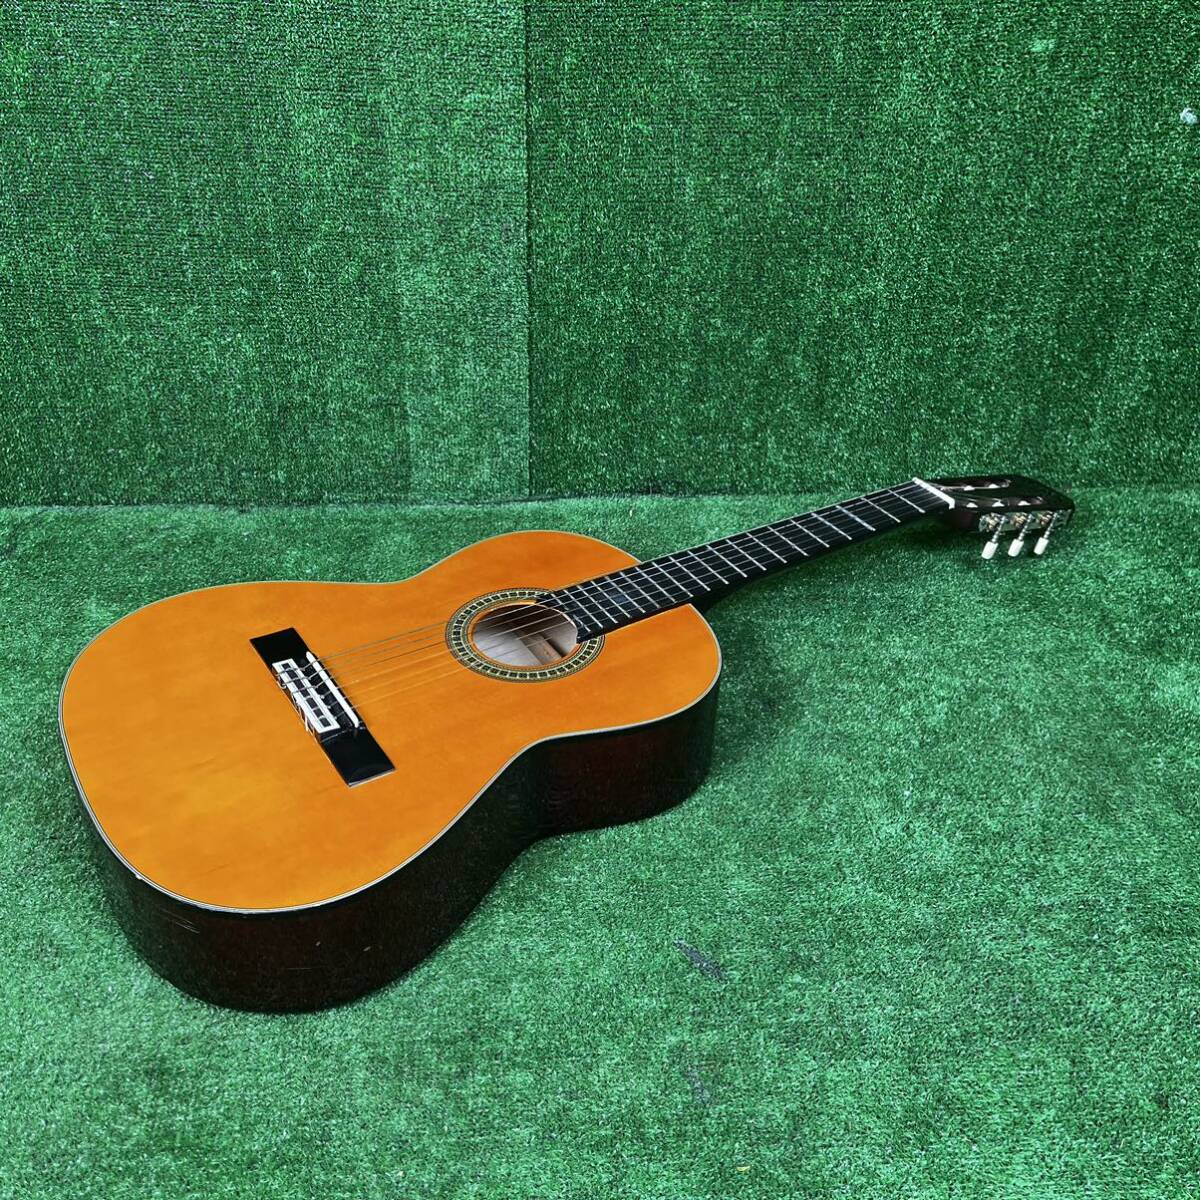 67-04】クラシックギター(ミニギター) Angelica(CG-11 1/2) アンジェリカ 現状品_画像1